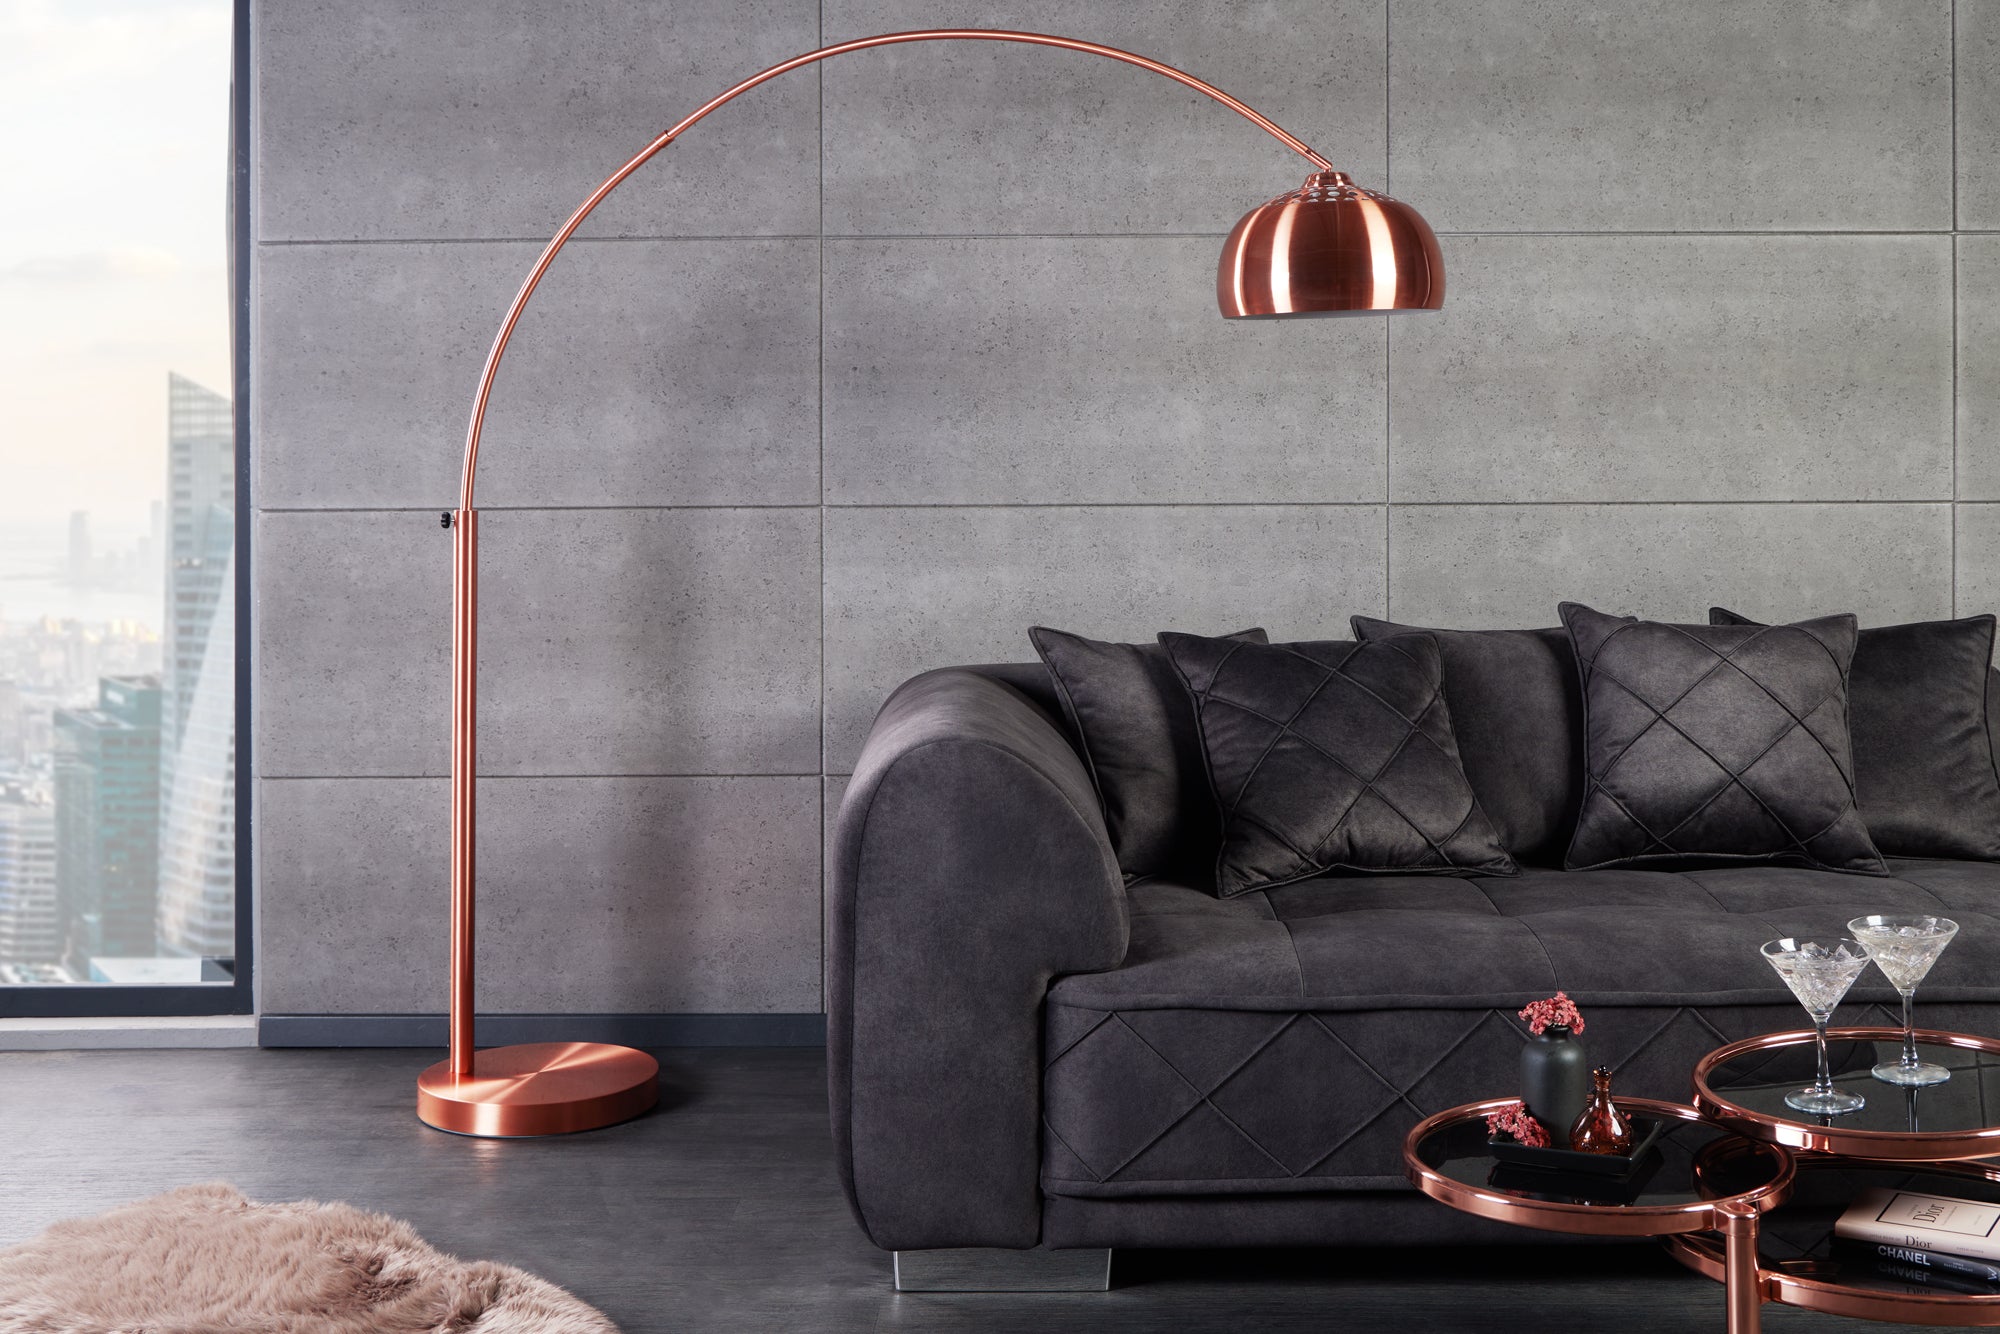 Big Bow II Floor Lamp 170-210cm Copper